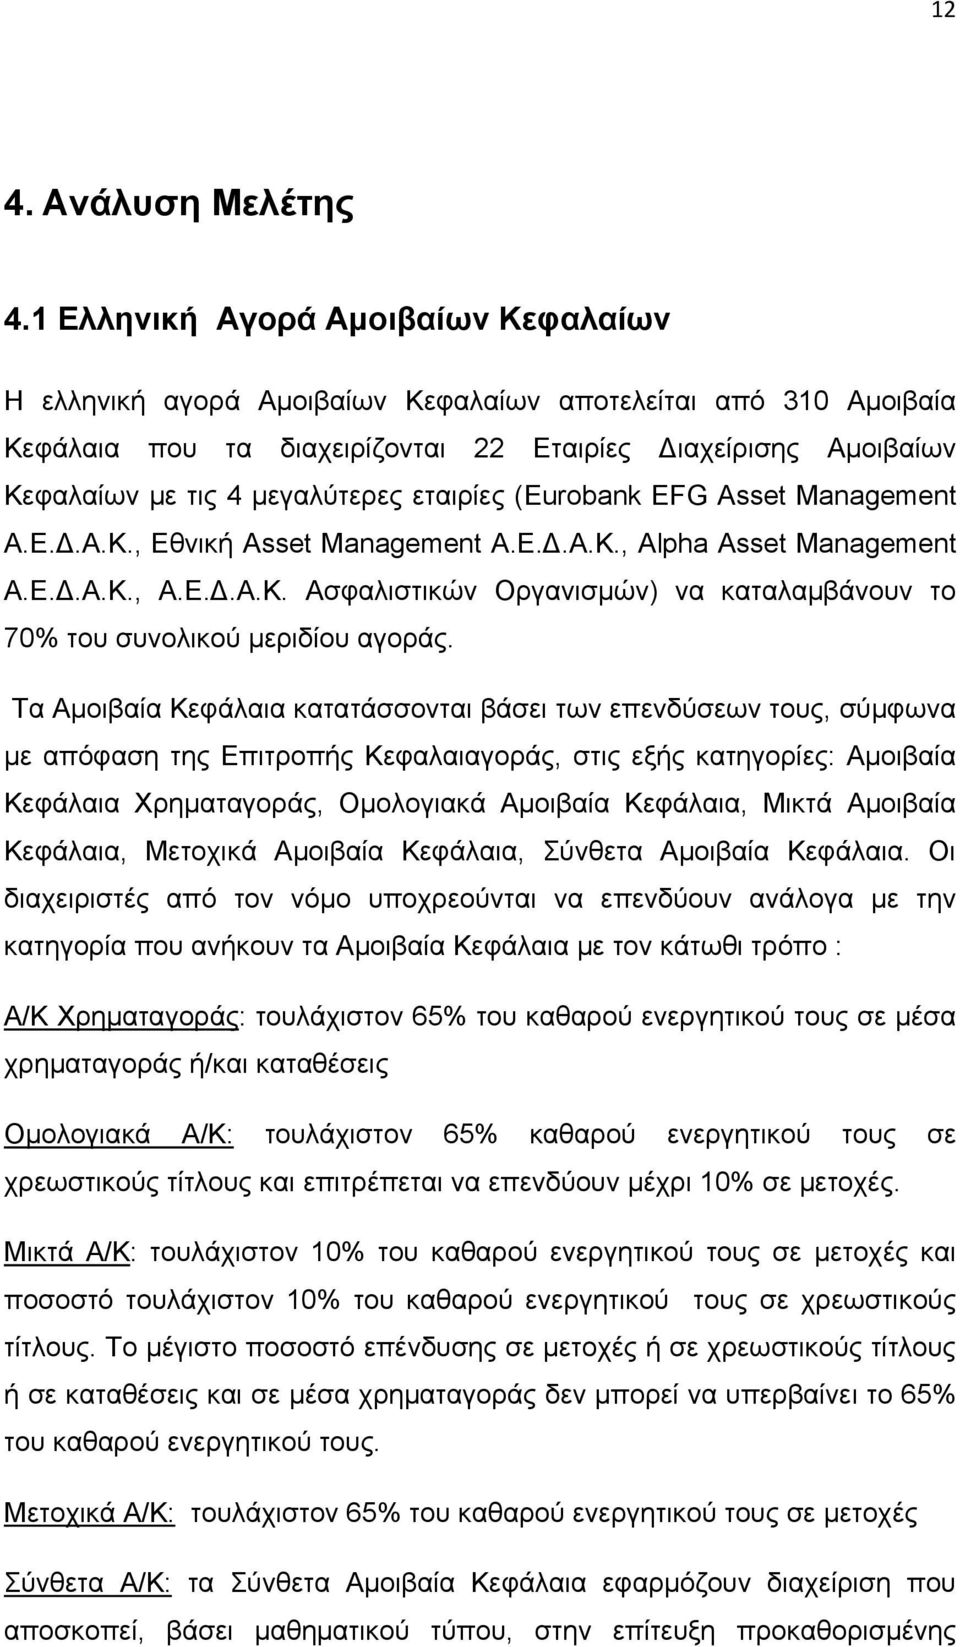 εταιρίες (Eurobank EFG Asset Management Α.Ε.Δ.Α.Κ., Εθνική Asset Management Α.Ε.Δ.Α.Κ., Alpha Asset Management Α.Ε.Δ.Α.Κ., Α.Ε.Δ.Α.Κ. Ασφαλιστικών Οργανισμών) να καταλαμβάνουν το 70% του συνολικού μεριδίου αγοράς.